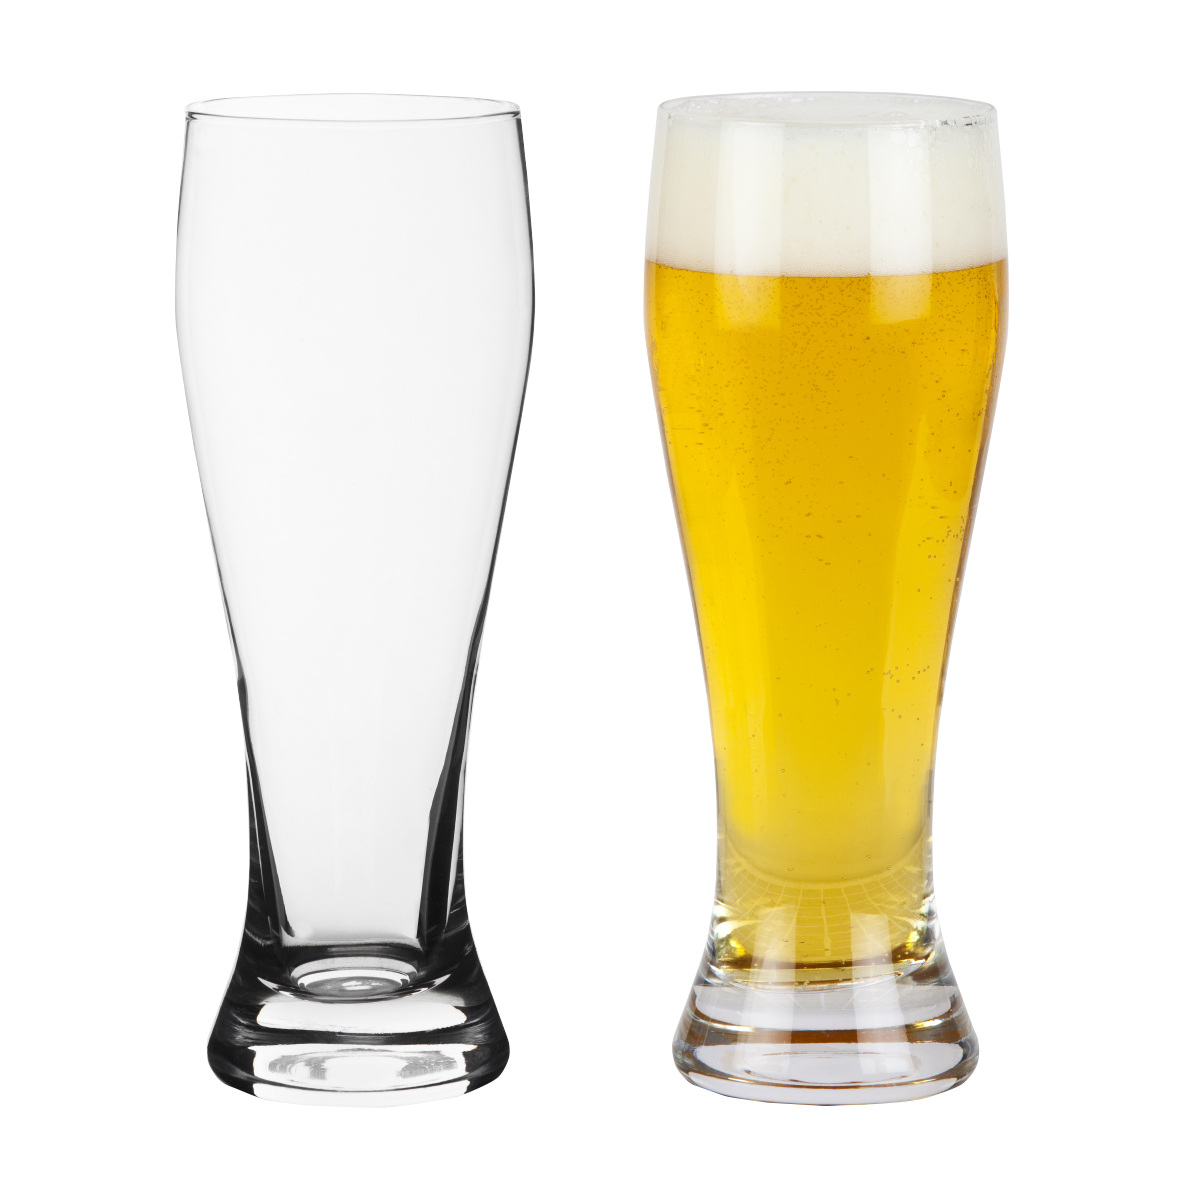 פורצהיים - כוס בירה בסגנון ווילי. 
נפח 690 מ”ל.
מידות הכוס: B57,T74,H230 מ”מ.